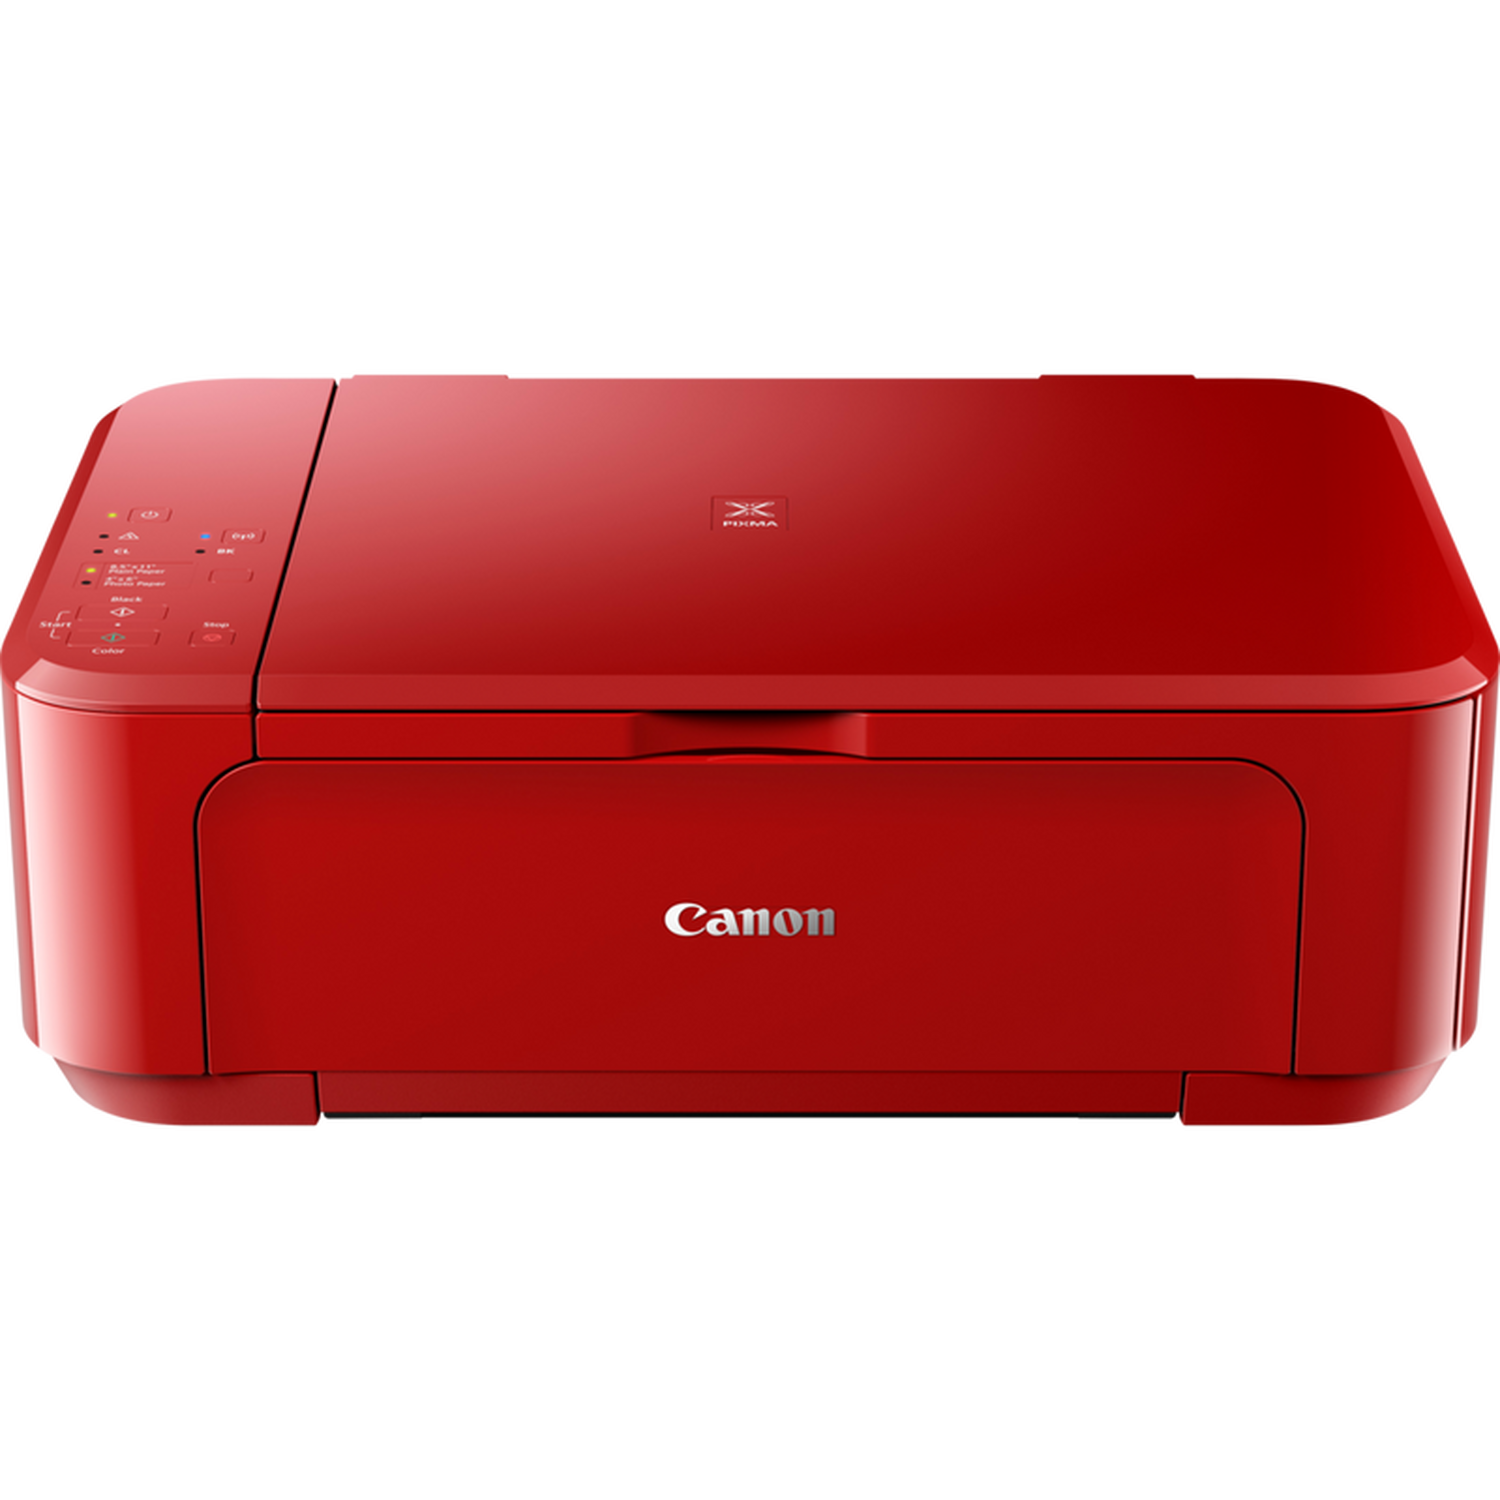 con tiempo arrojar polvo en los ojos En necesidad de Compra Impresora de inyección de tinta multifunción PIXMA MG3650S de Canon  roja — Tienda Canon Espana